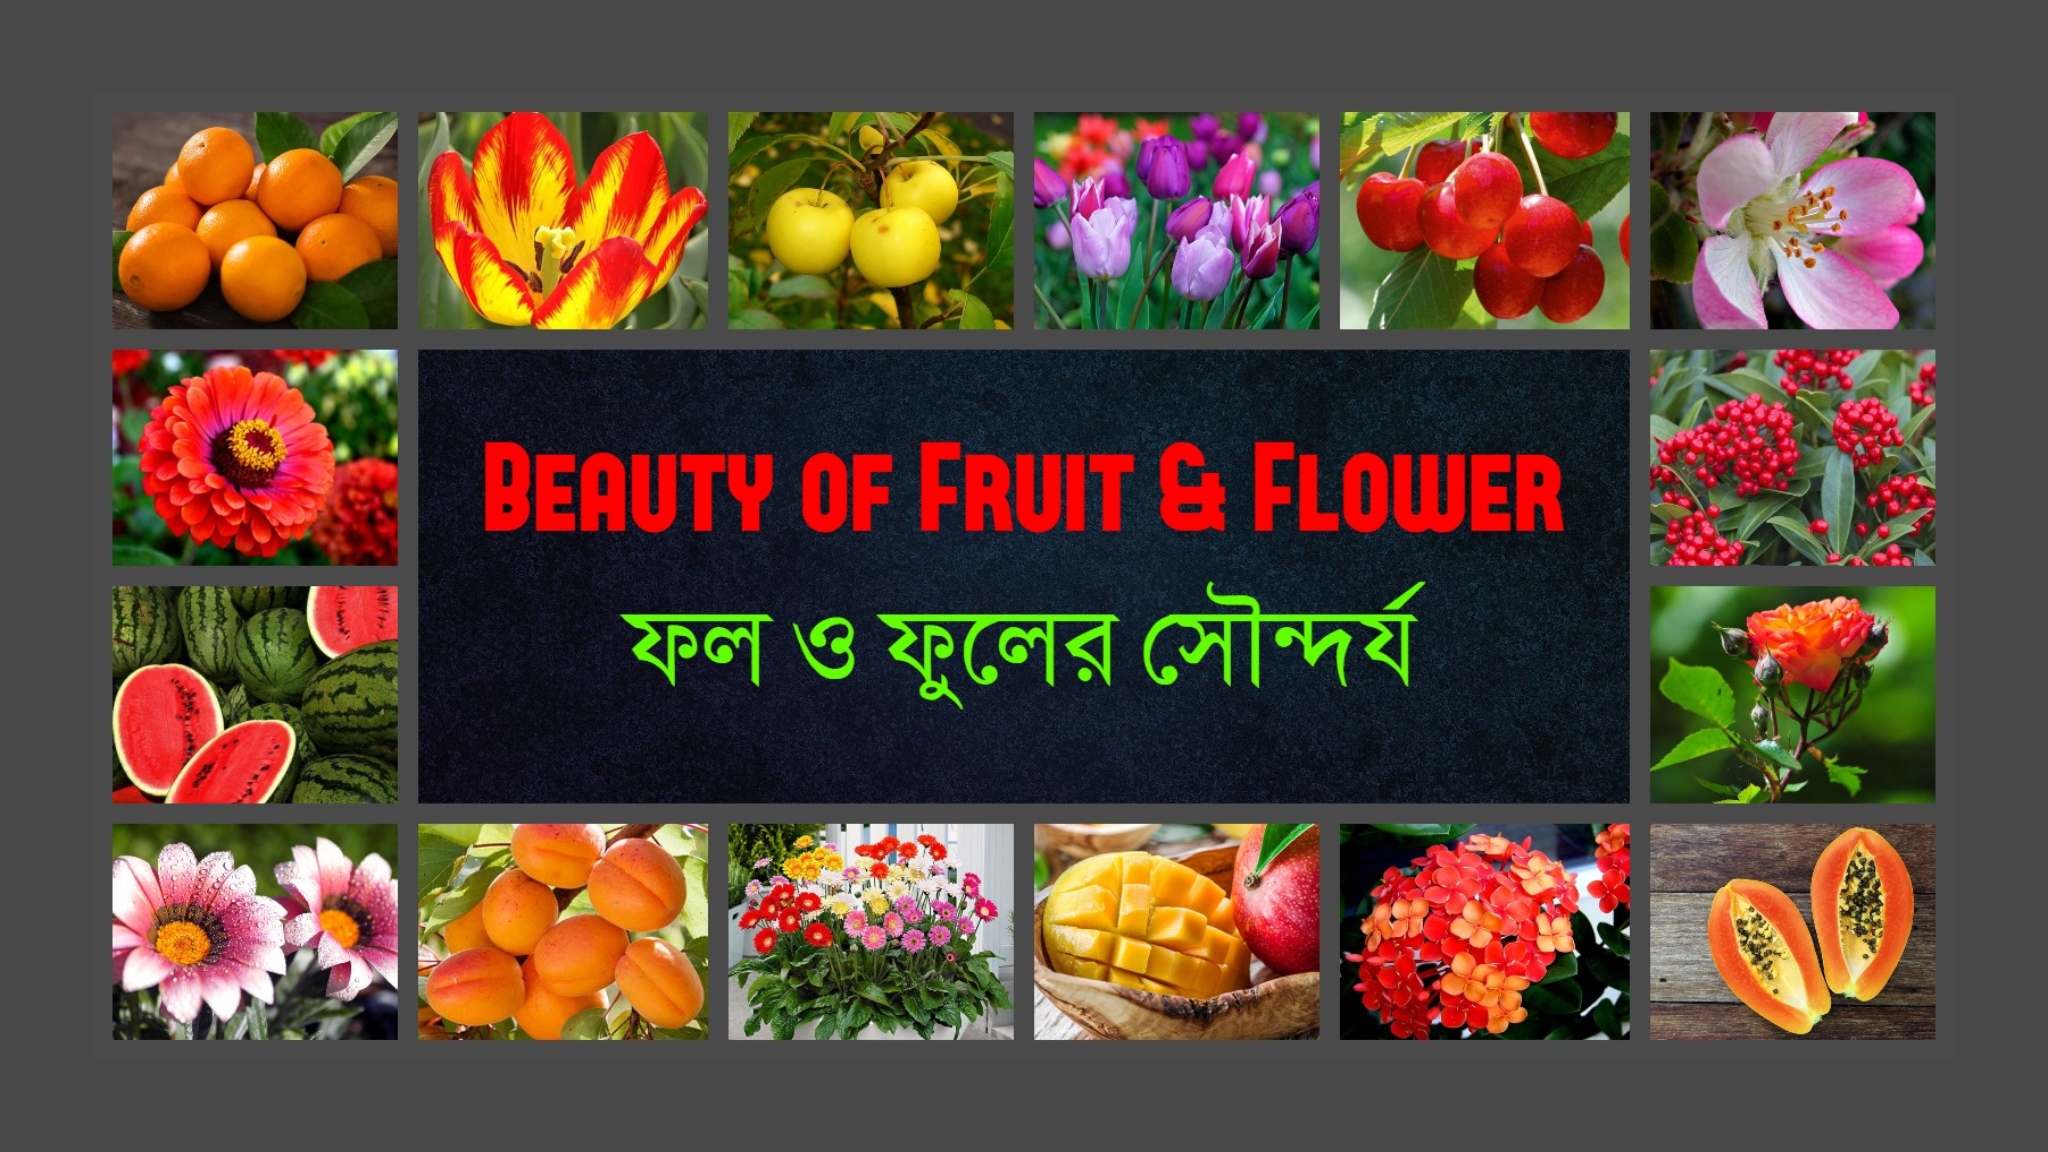 Beauty of Fruit & flower